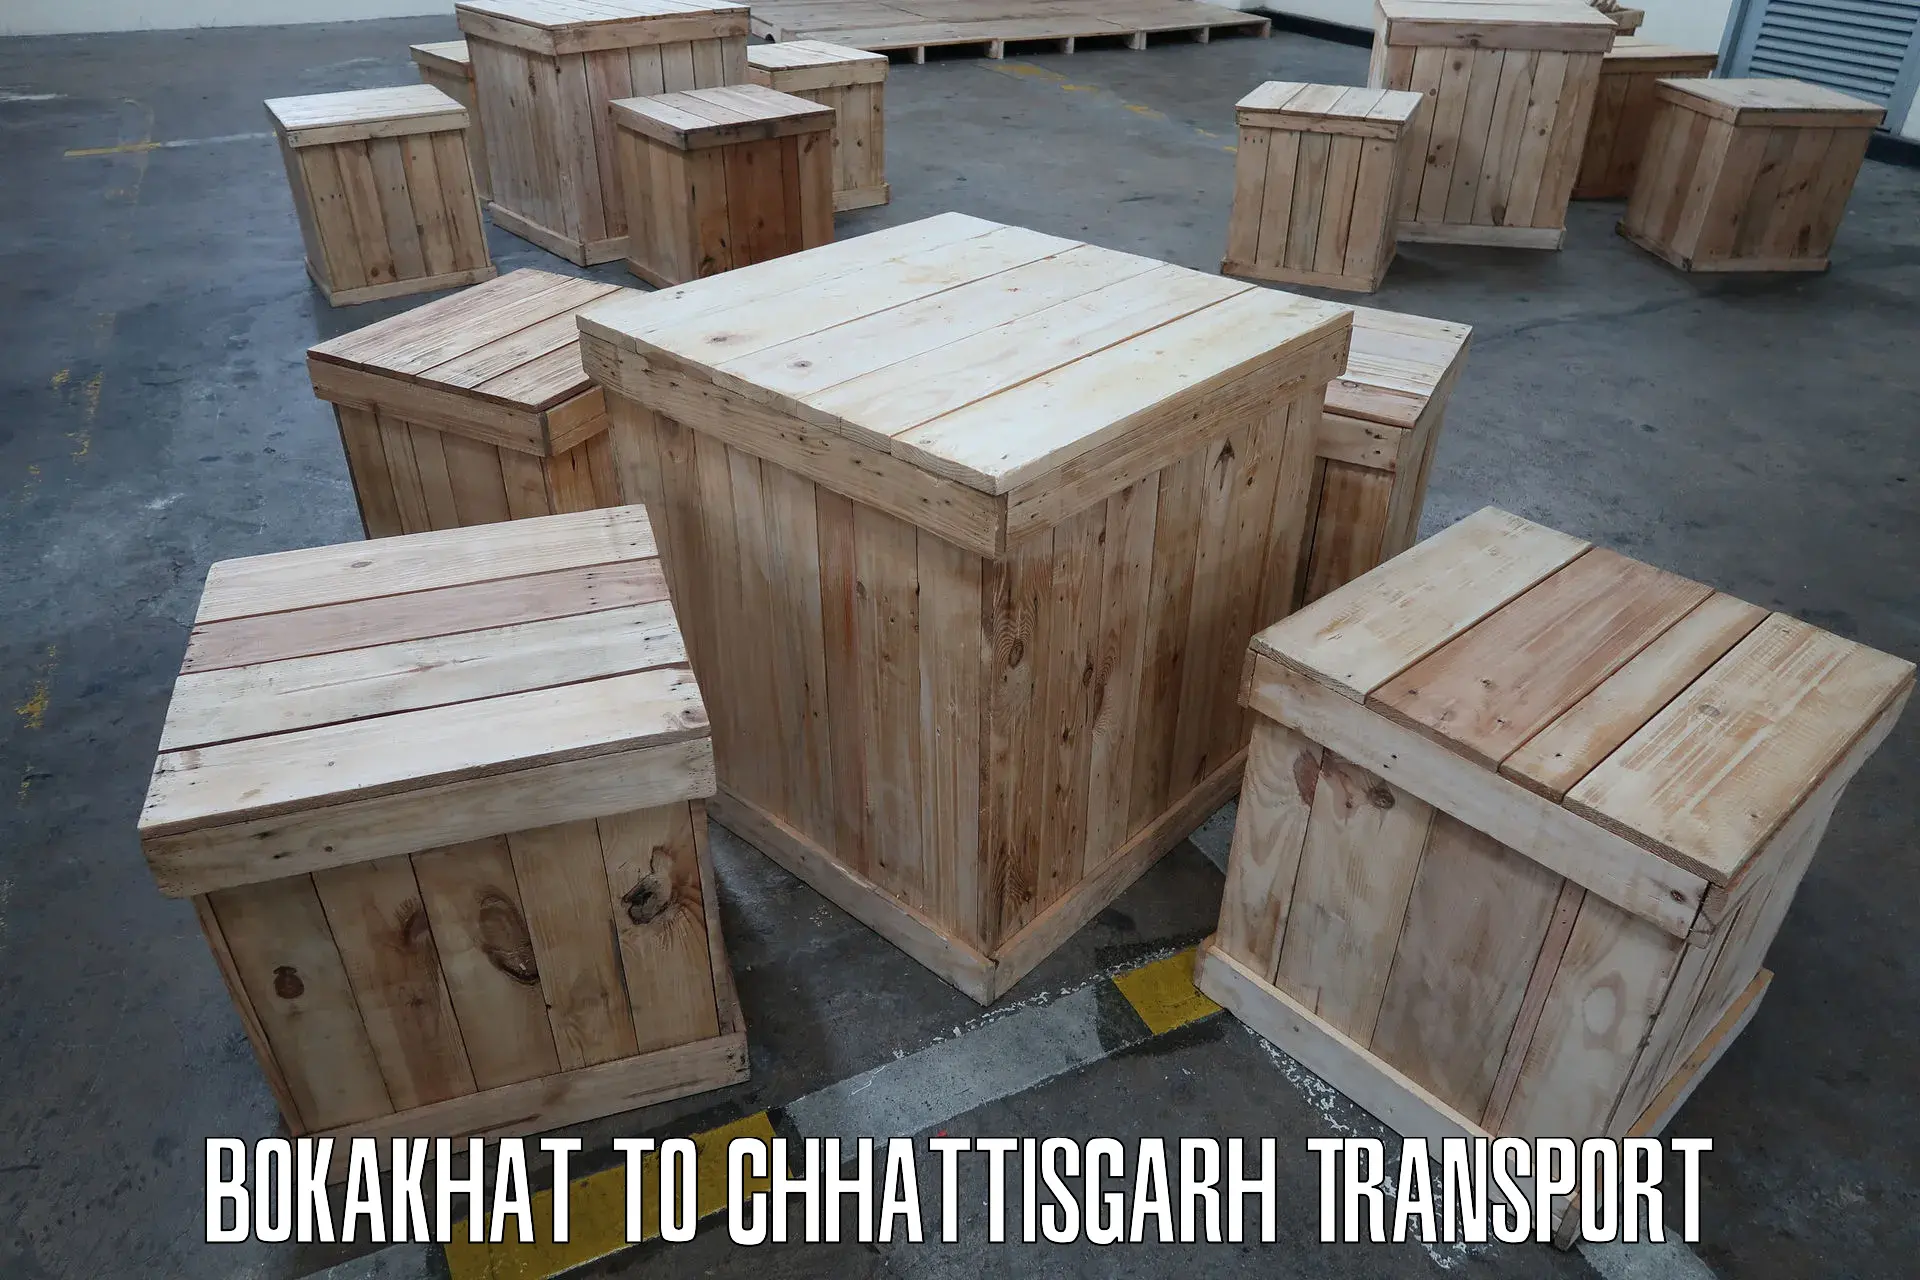 Furniture transport service Bokakhat to Berla